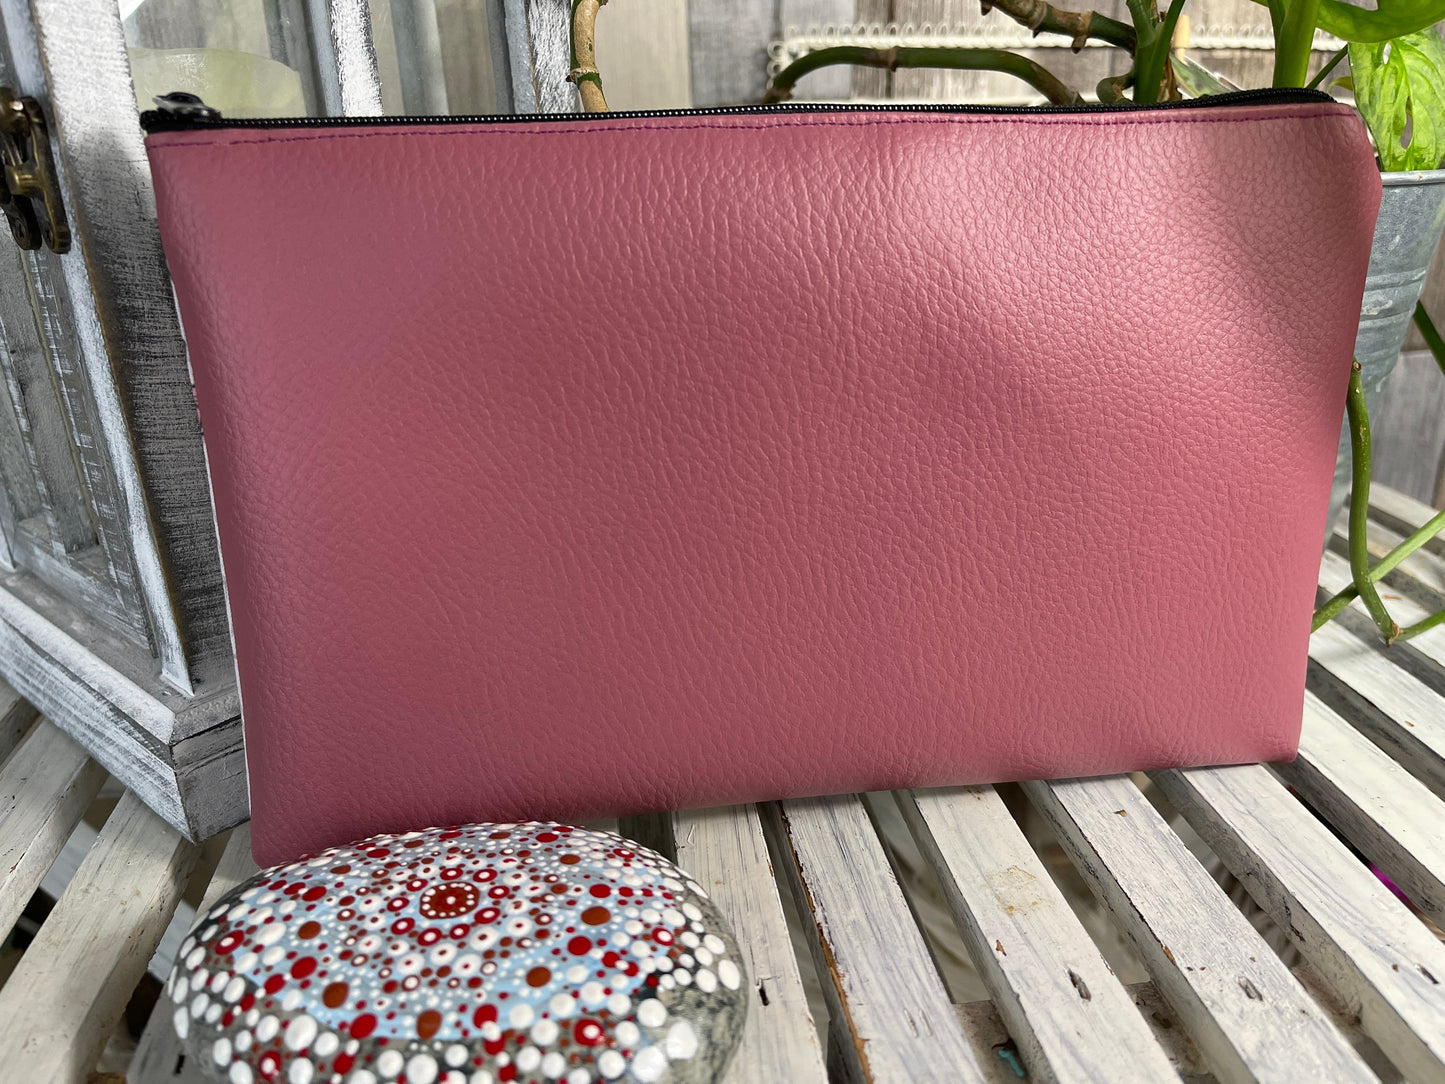 Stylische Federtasche Stifttasche Mäppchen Kosmetik kleine Tasche stay safe grau mit  Flamingo